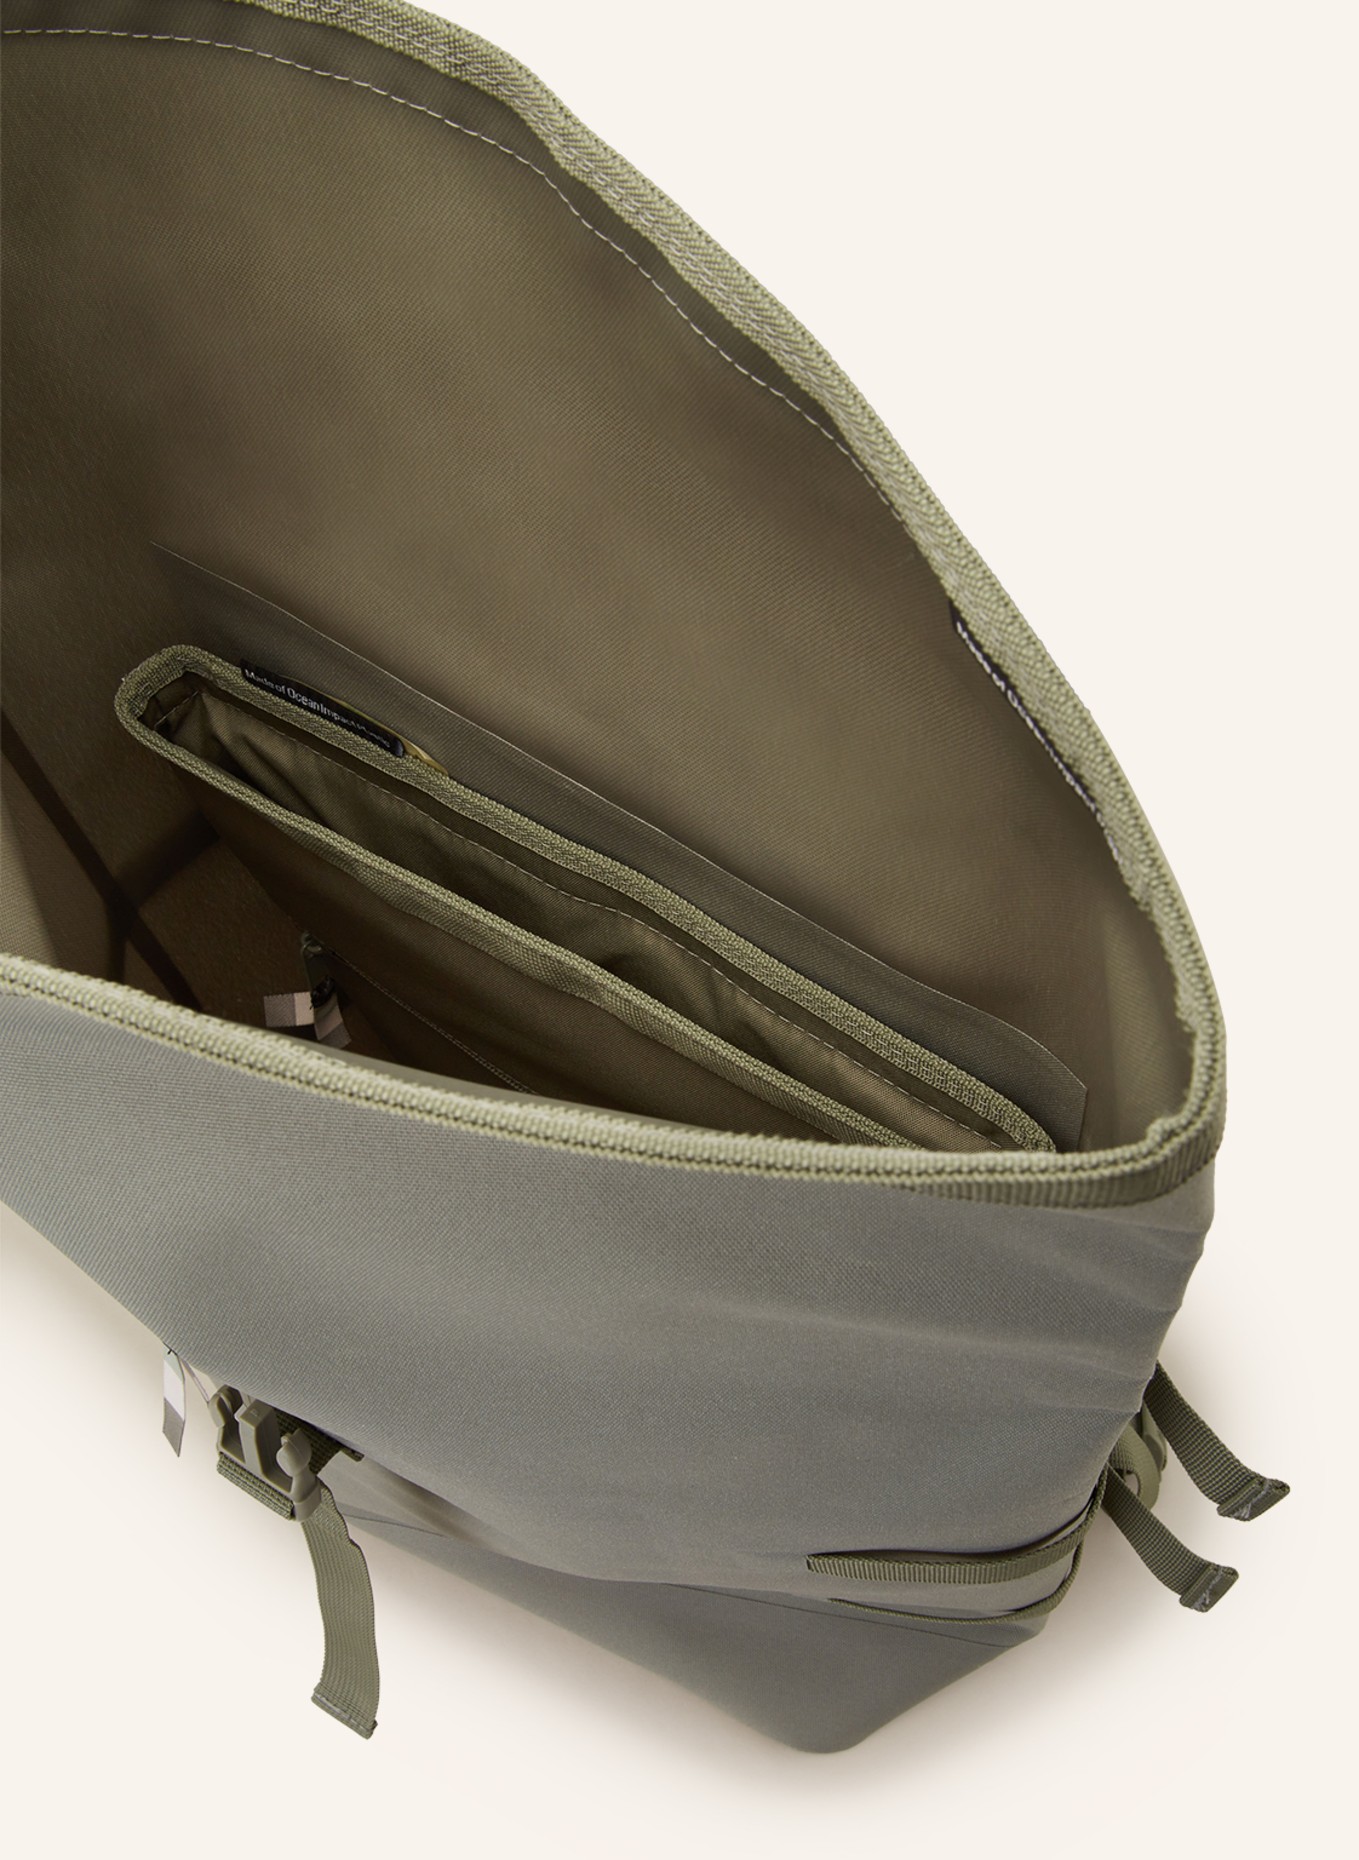 GOT BAG Rucksack 31 l mit Laptop-Fach, Farbe: HELLGRÜN (Bild 3)